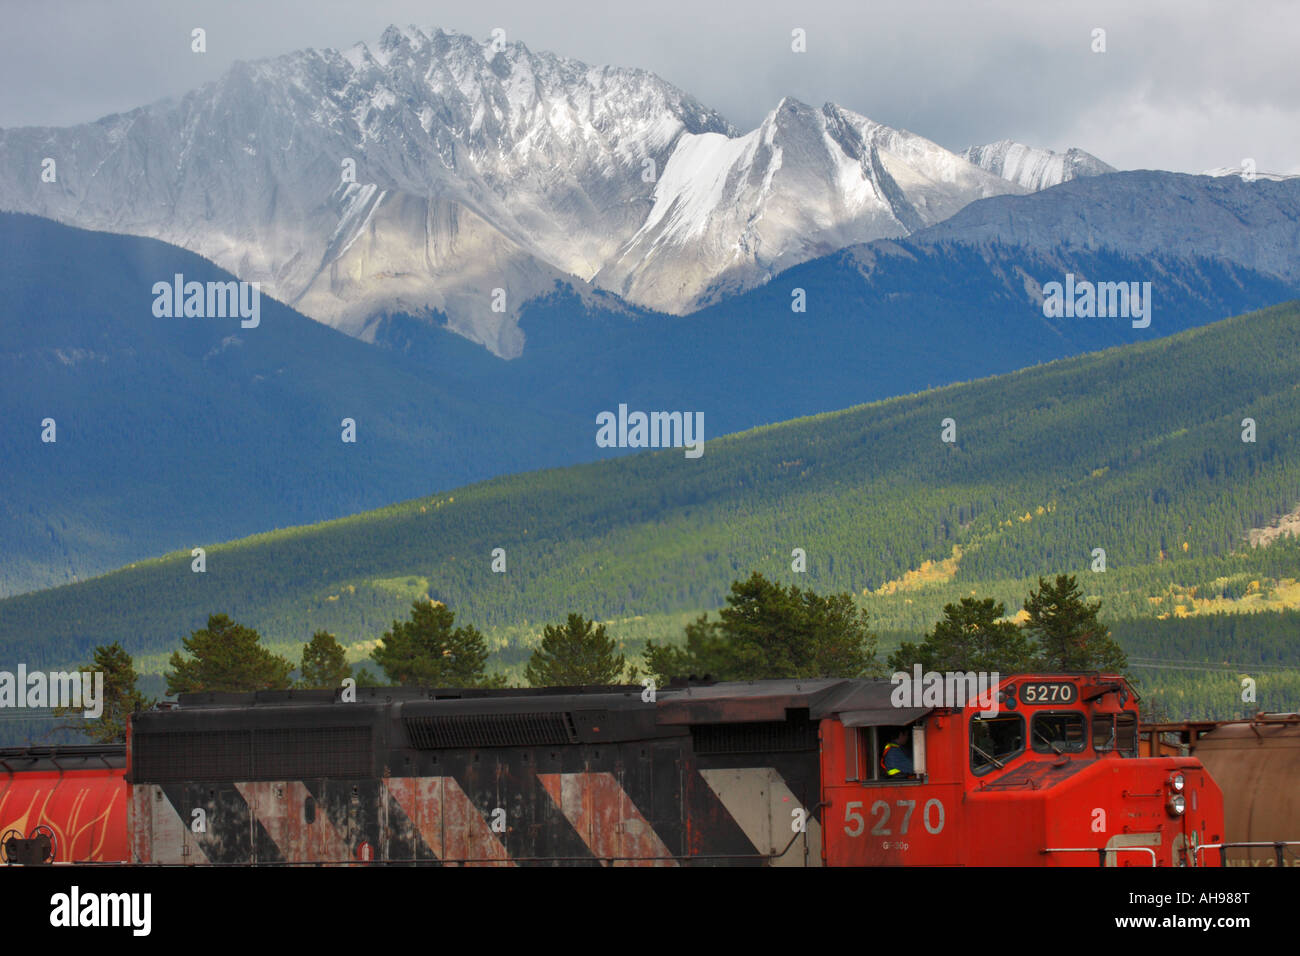 Il Canadian National Railway treno merci nei pressi della stazione ferroviaria di Jasper con montagne rocciose in background. Foto Stock